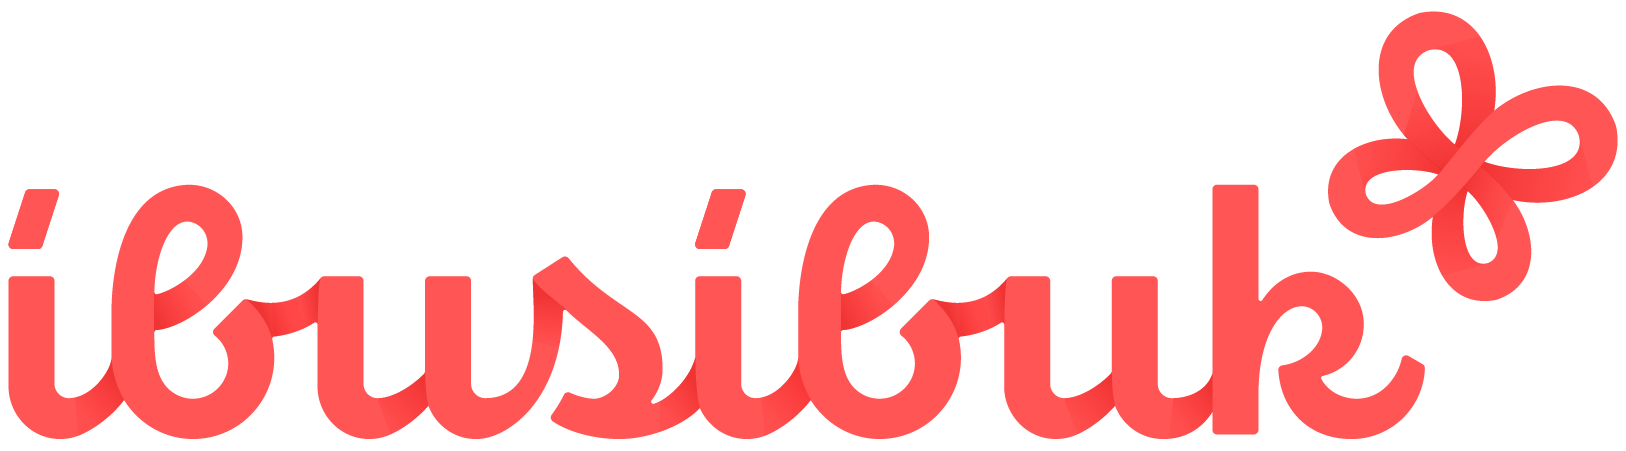 ibusibuk-logo